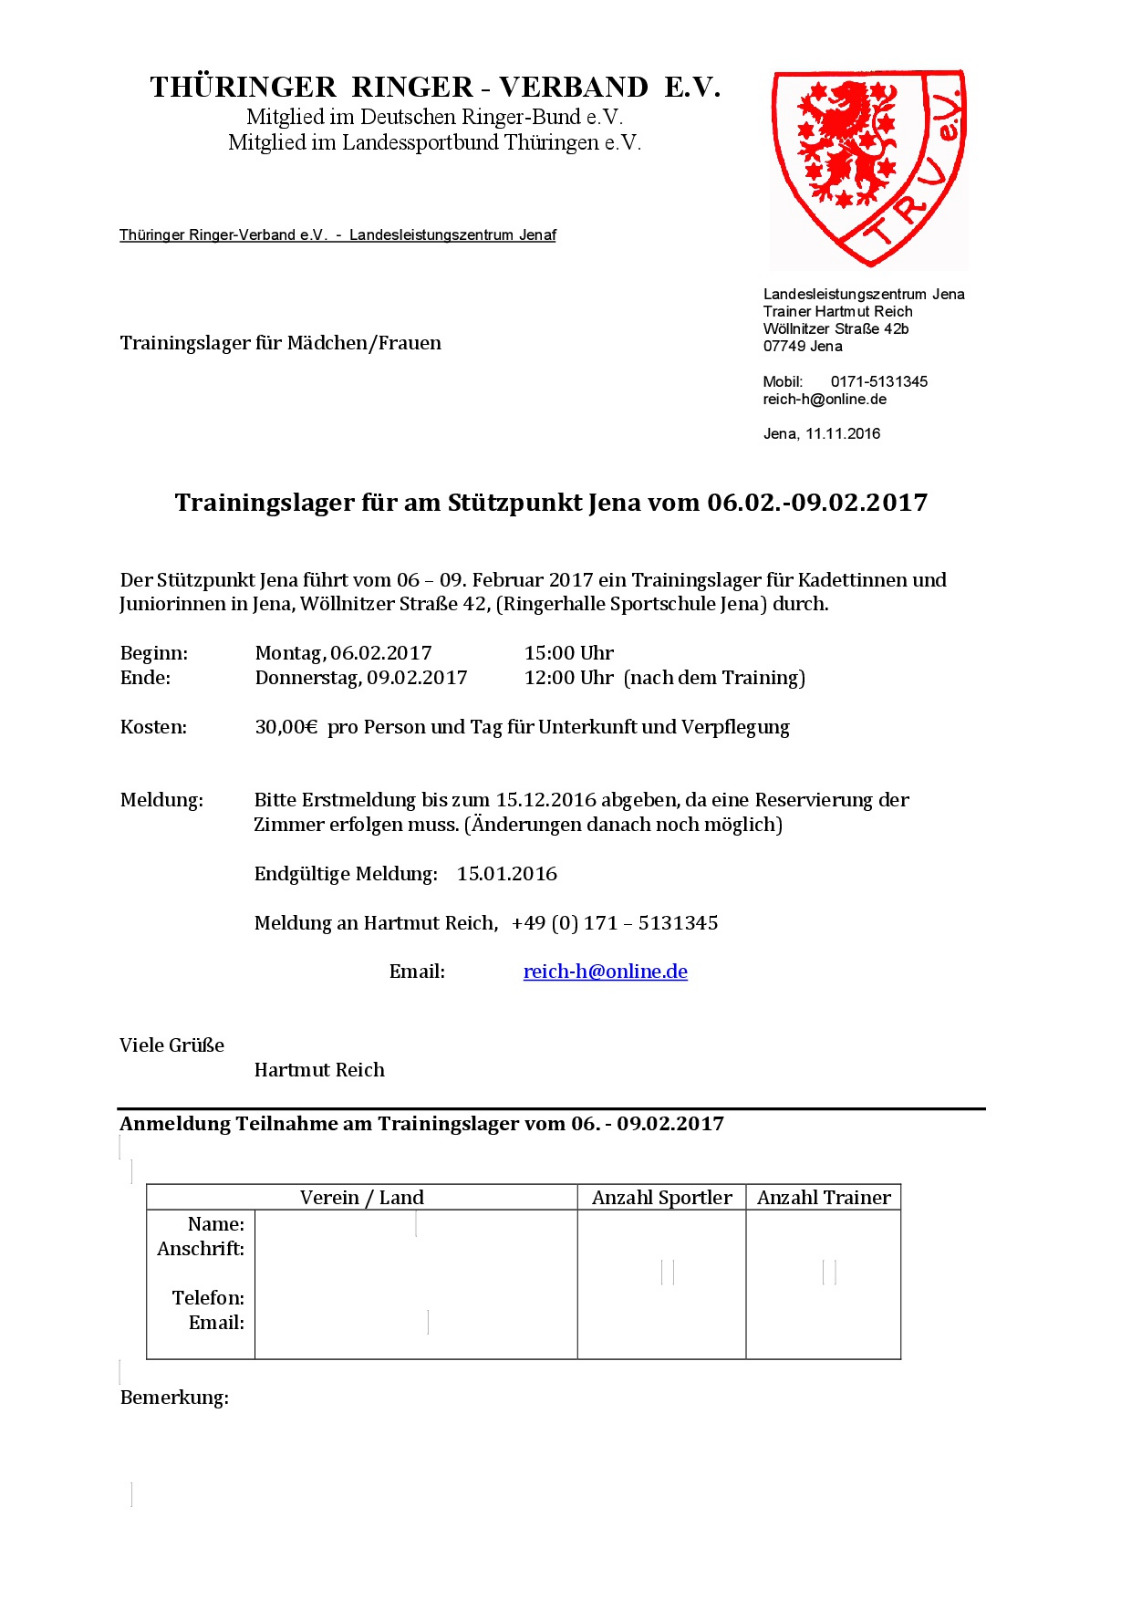 TiT – Training in Thüringen 2017